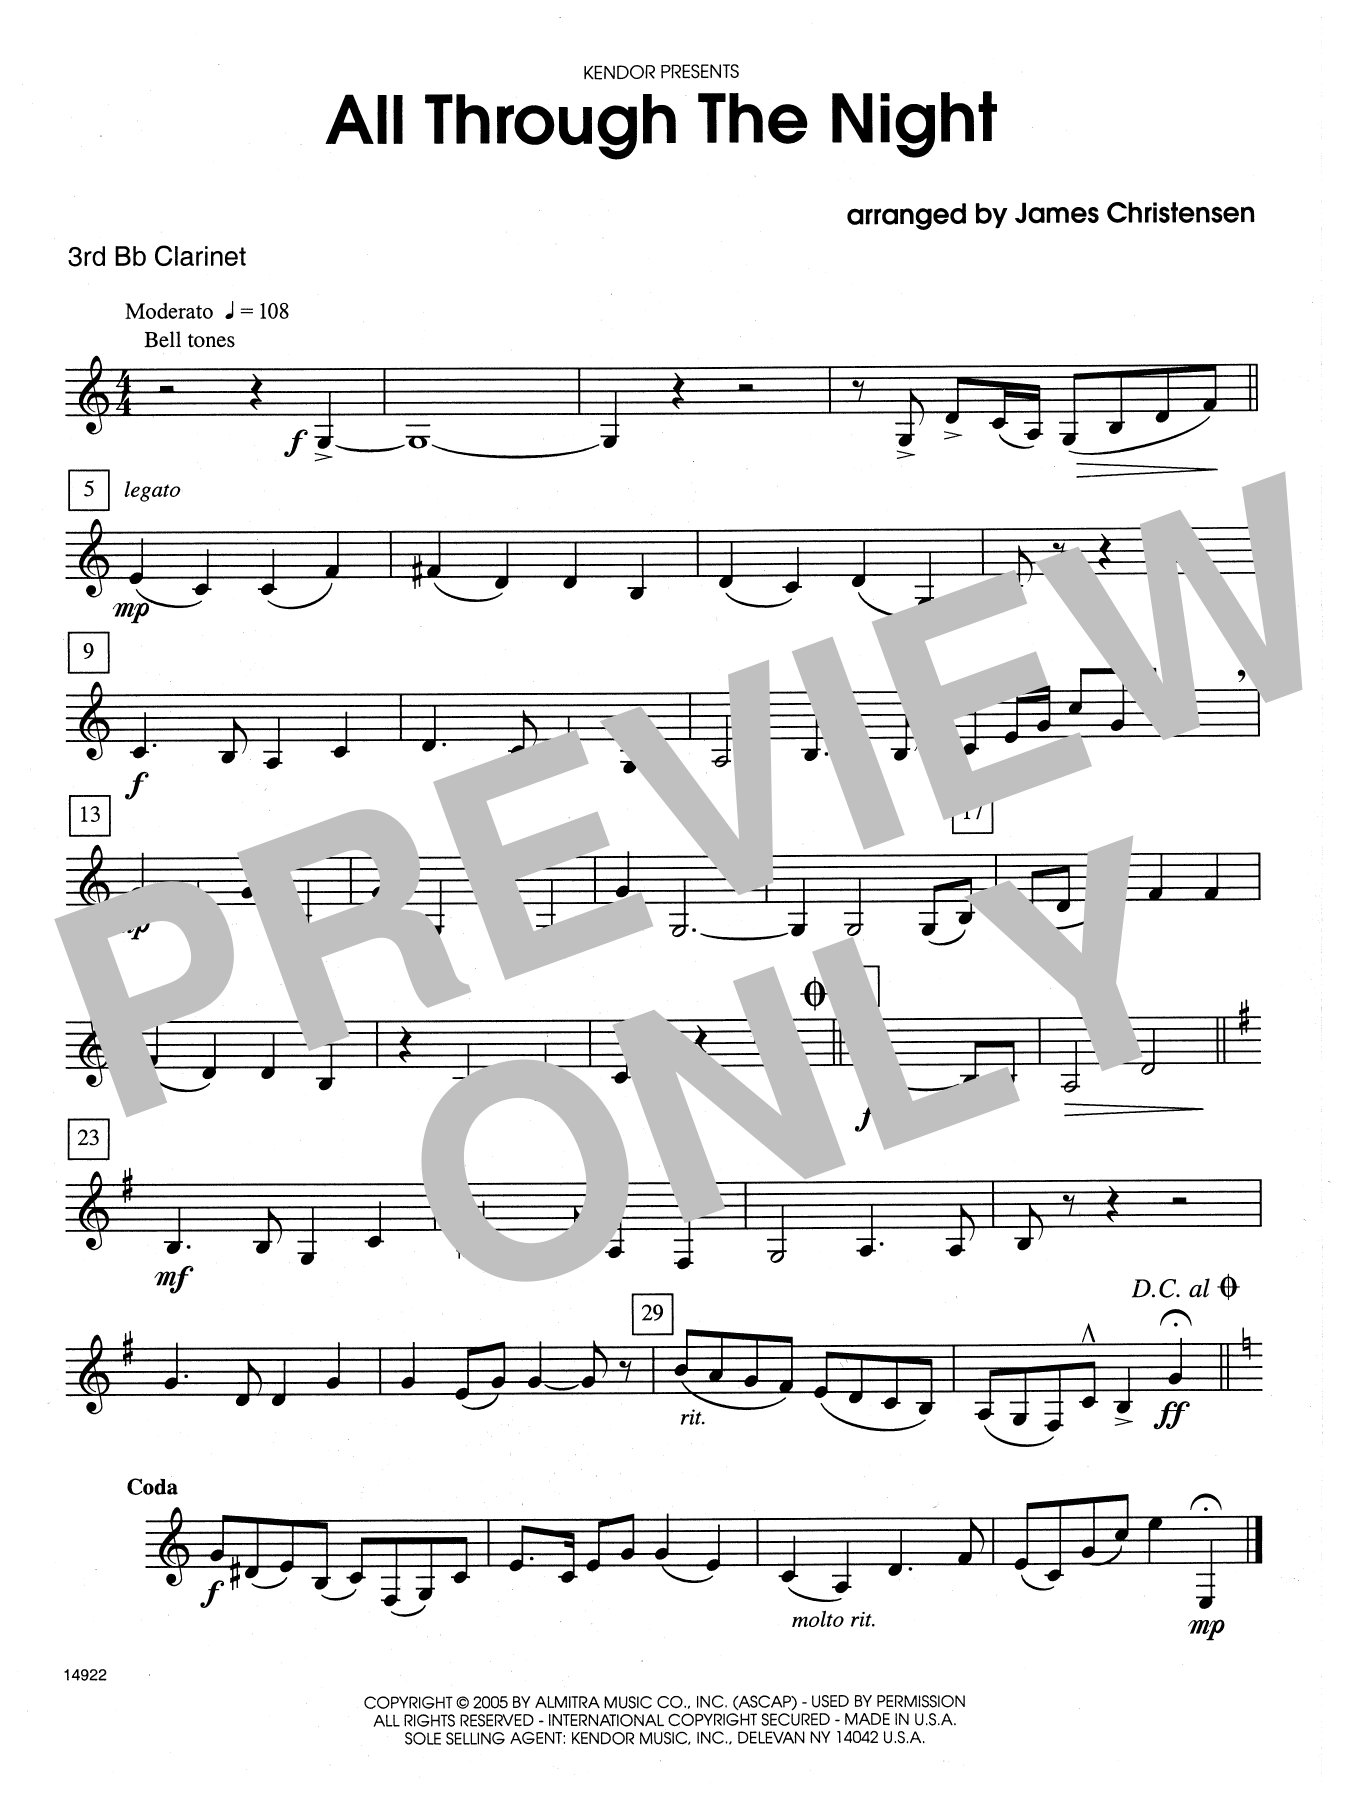 All Through the Night - 3rd Bb Clarinet (Woodwind Ensemble) von James Christensen